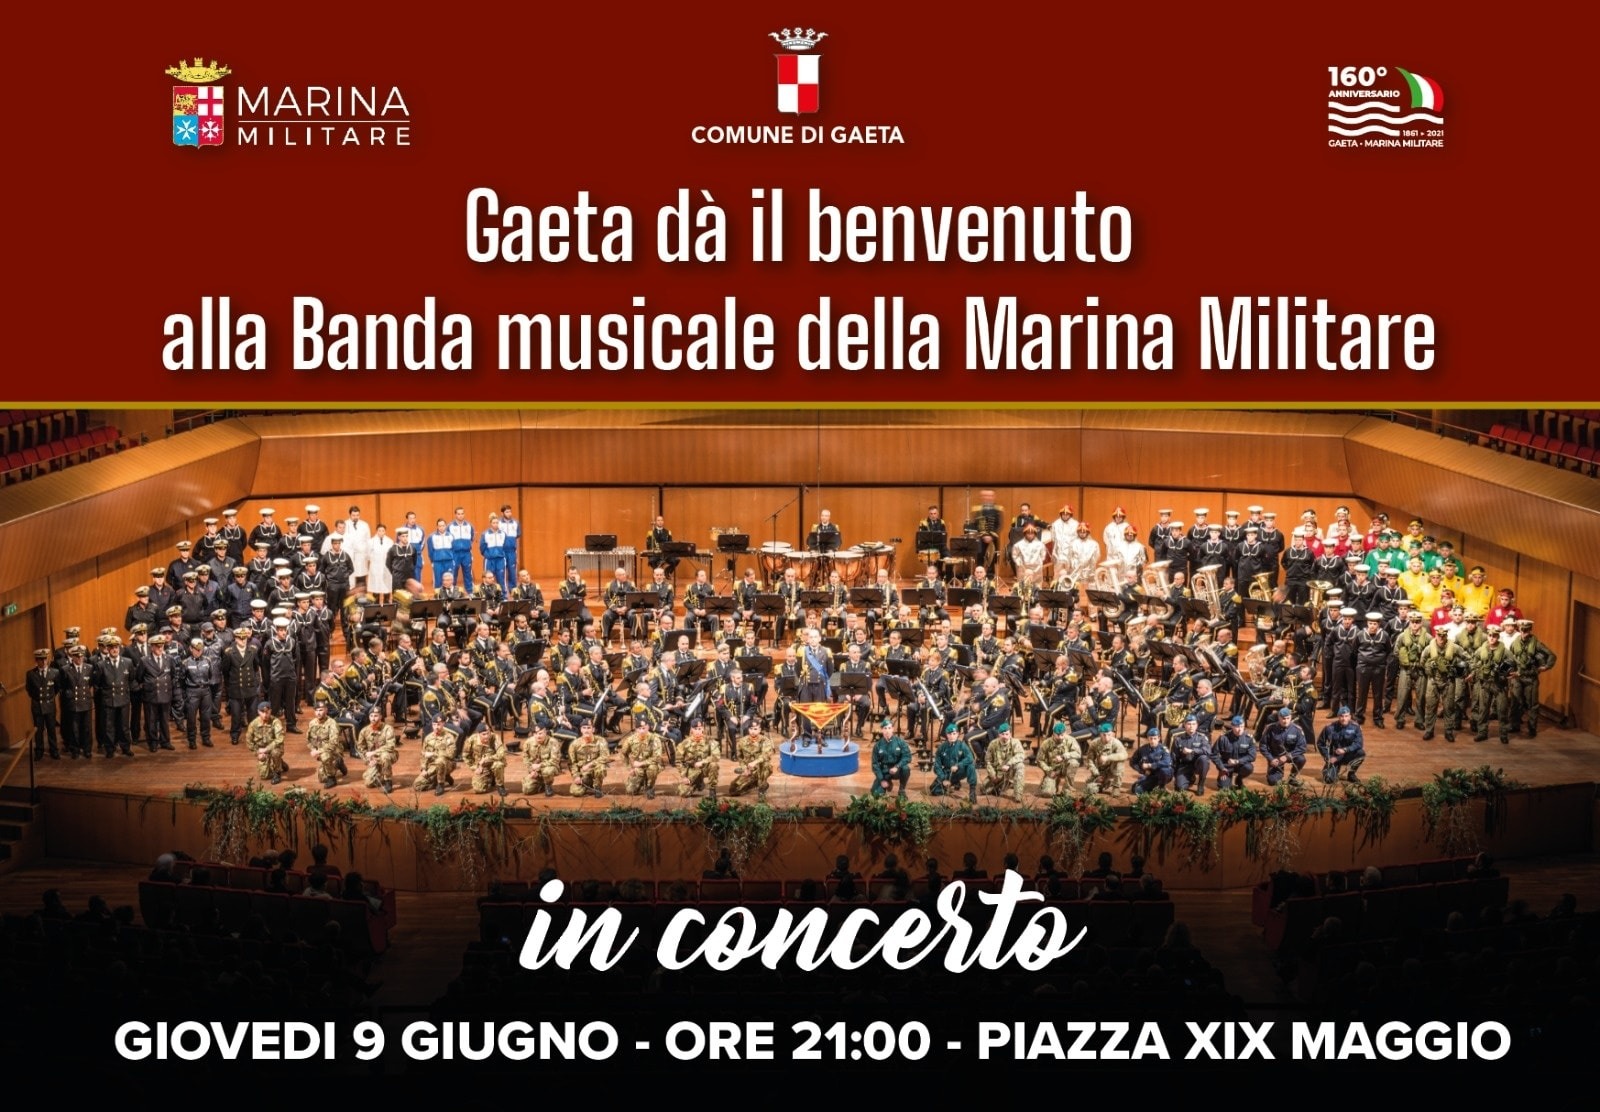 Concerto della Banda musicale della Marina Militare Italiana